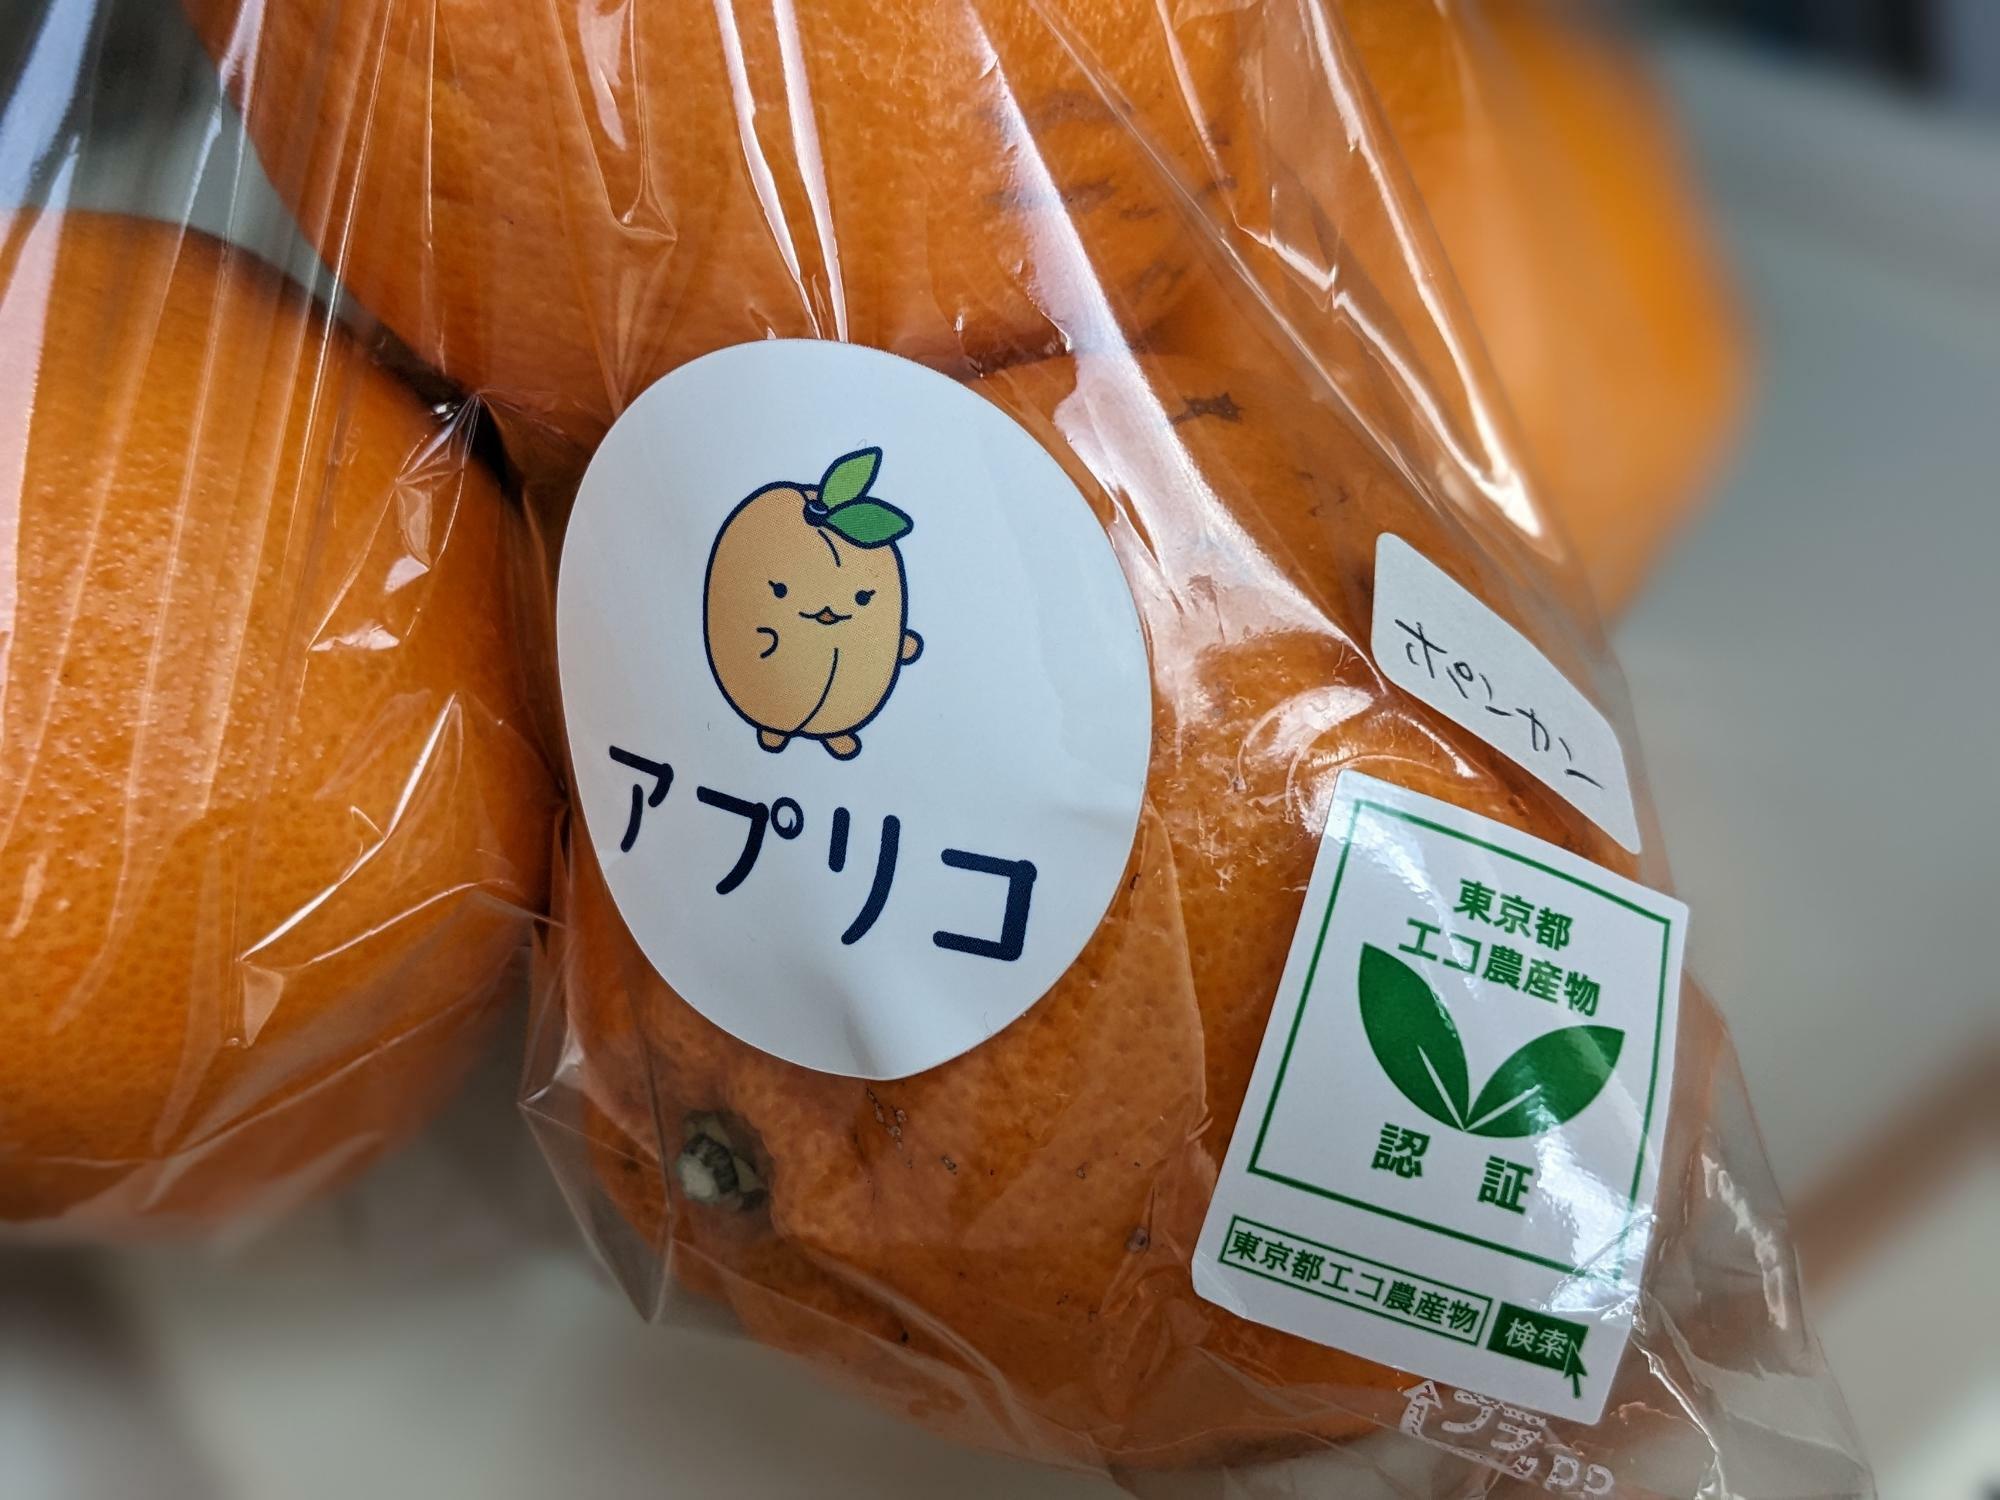 「東京都エコ農産物の認証」を受けたポンカン